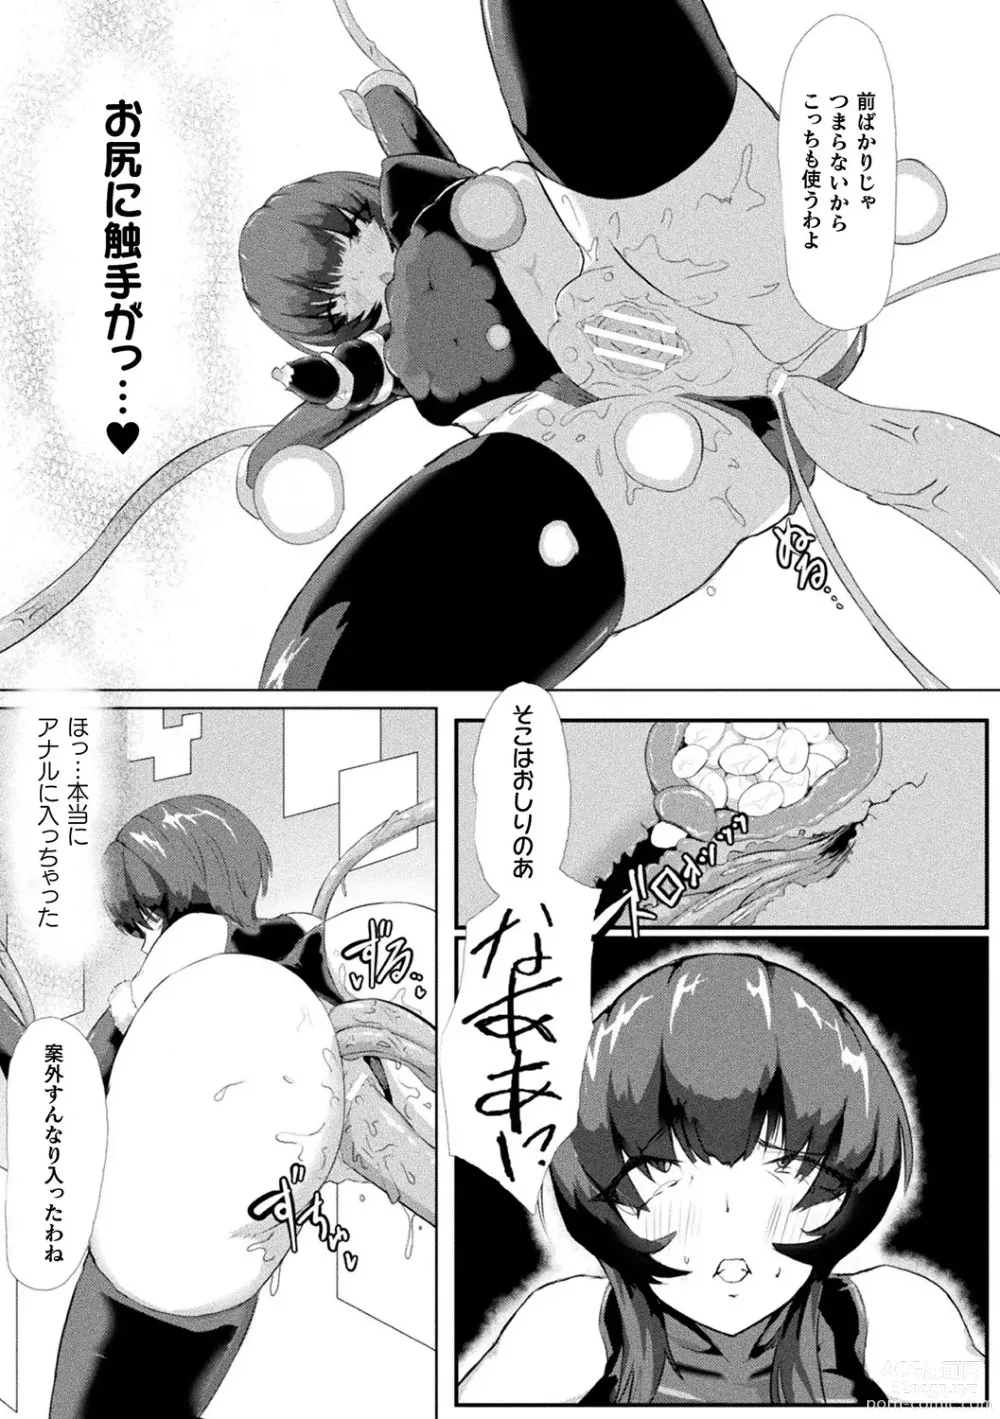 Page 97 of manga Bessatsu Comic Unreal AI ni Wakaraserareru Jinrui Hen Vol. 2